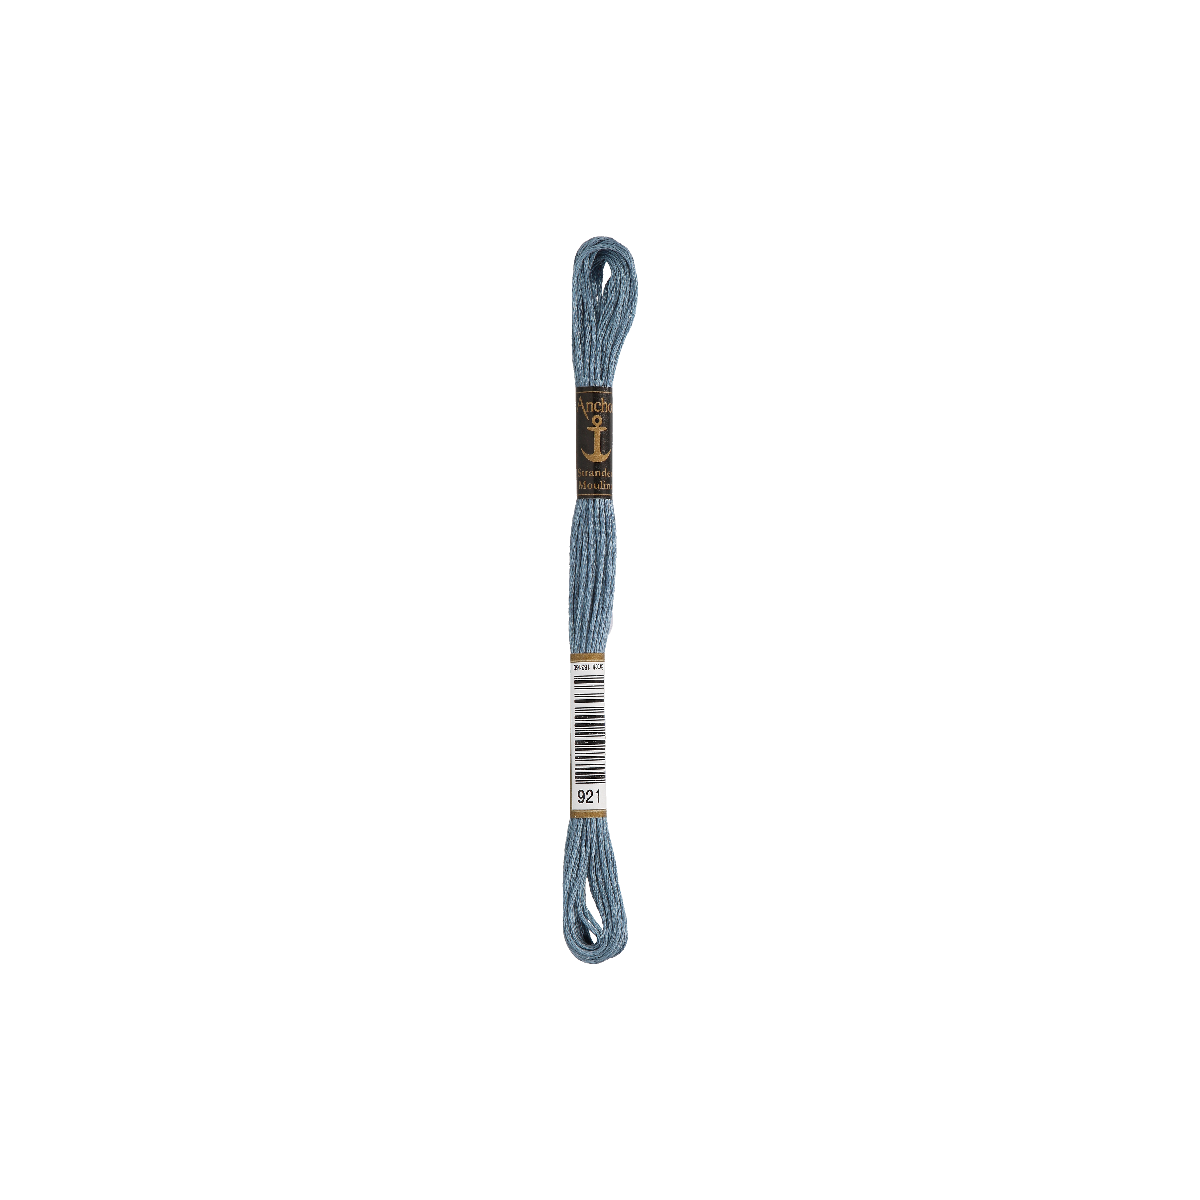 Anchor Sticktwist 8m, blaugrau, Baumwolle, Farbe 921,...